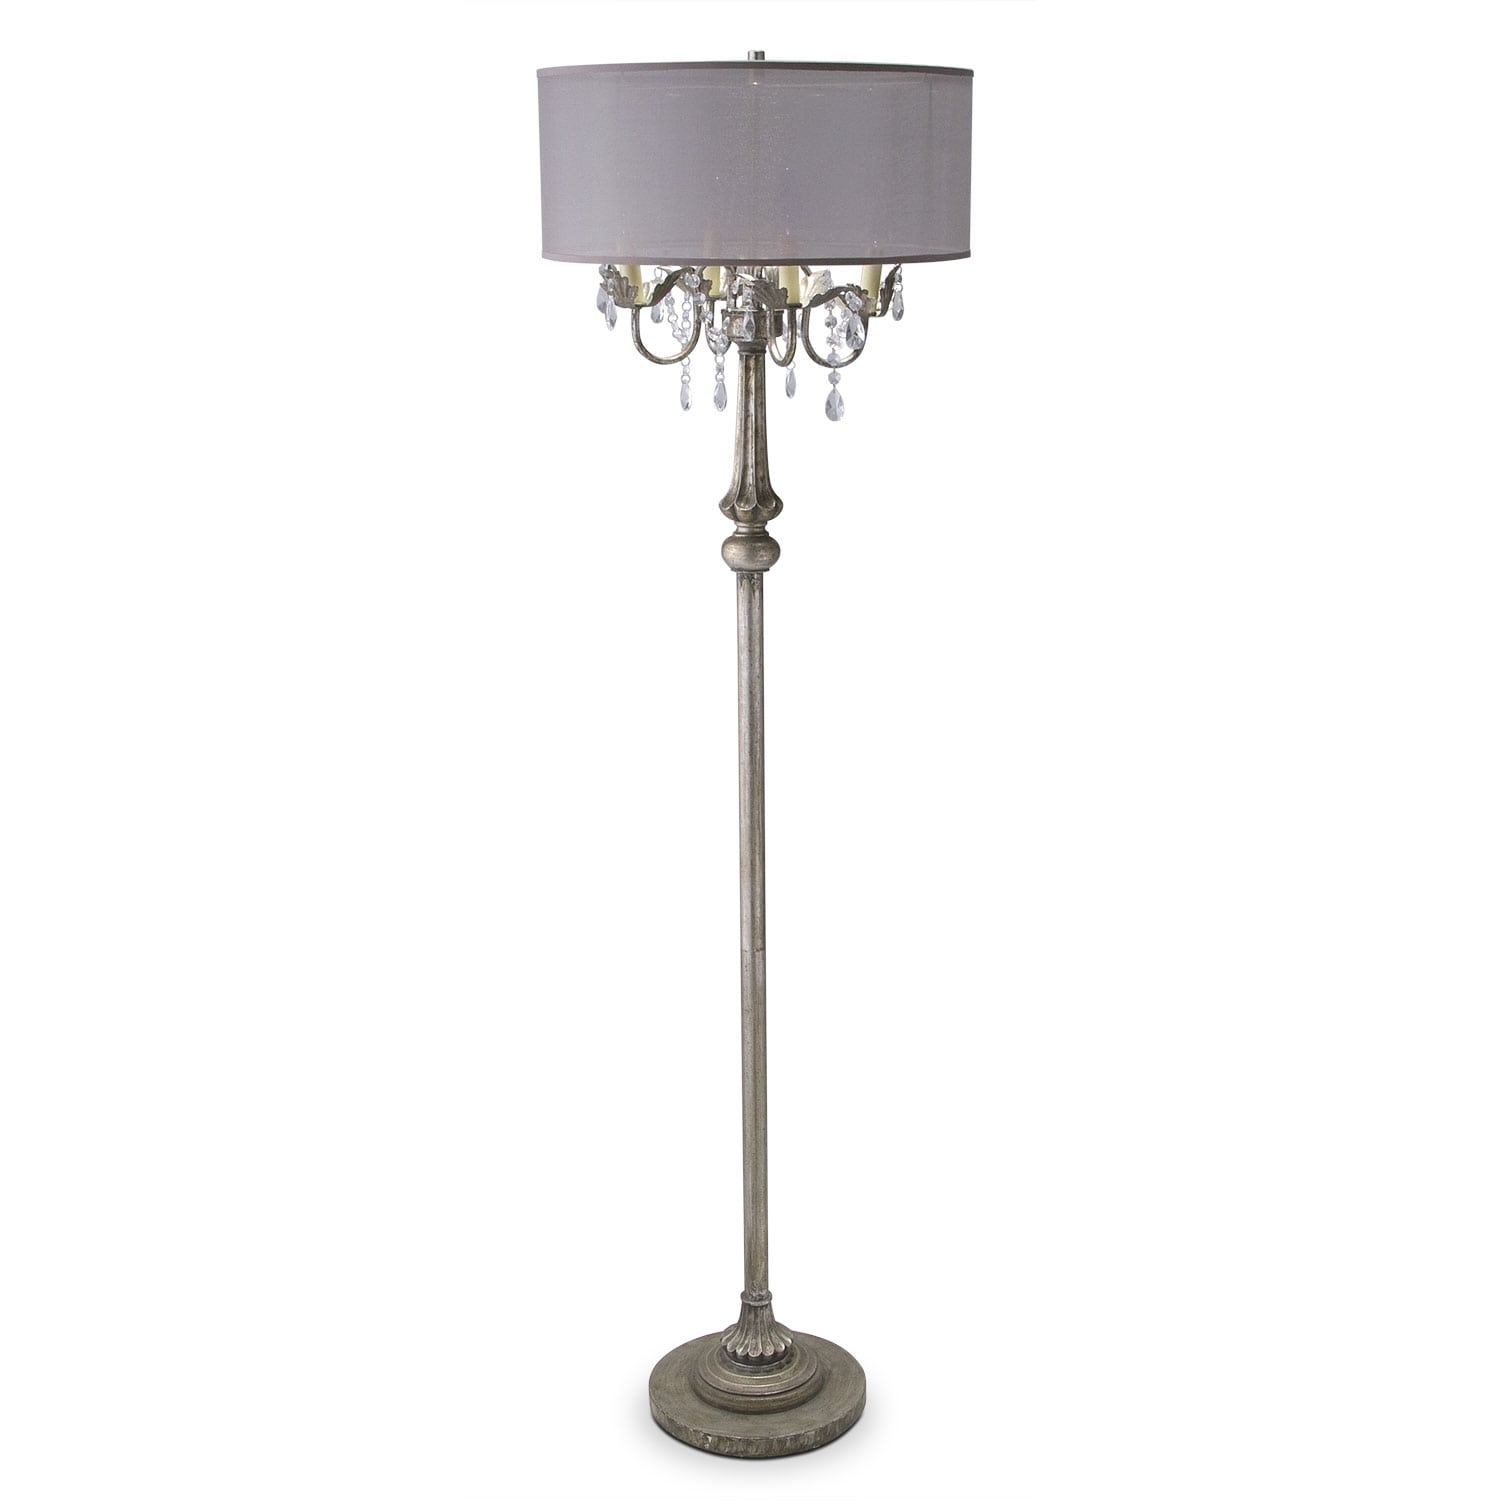 Chandelier Floor Lamp Value City, Value City Furniture Floor Lamps